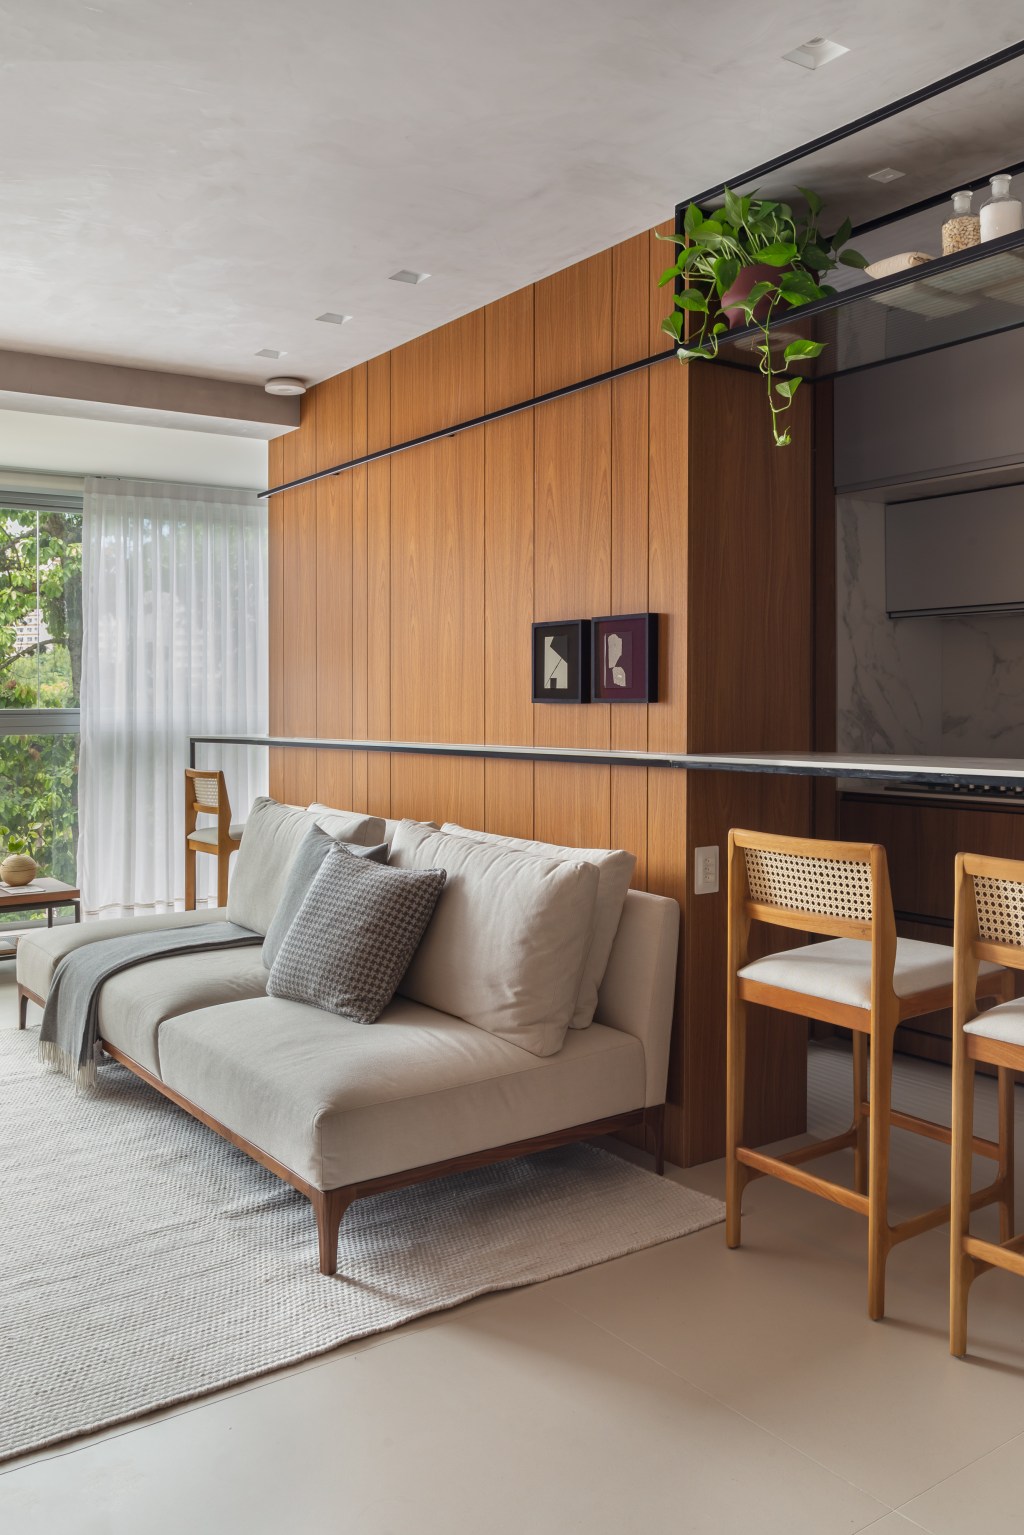 Apê de 100 m2 prático décor contemporâneo toques industriais arquiteto Rafael Ramos sala sofa estar madeira banco varanda cortina